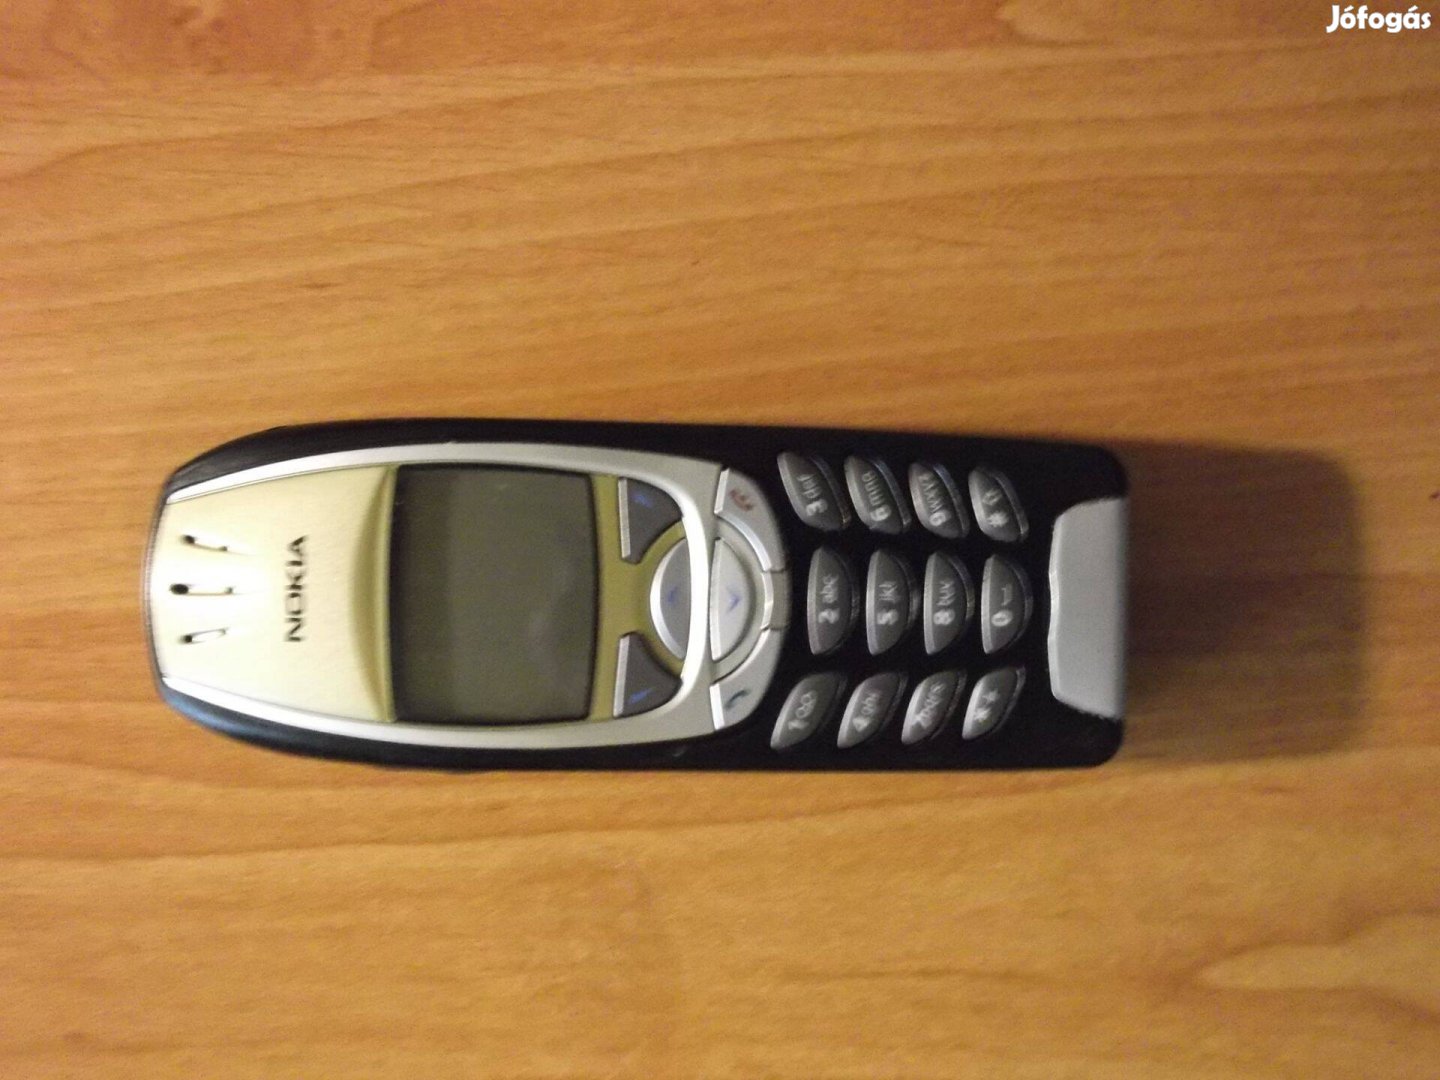 Eladó egy Nokia 6310i szép karcmentes külsővel, donornak, alkatrésznek